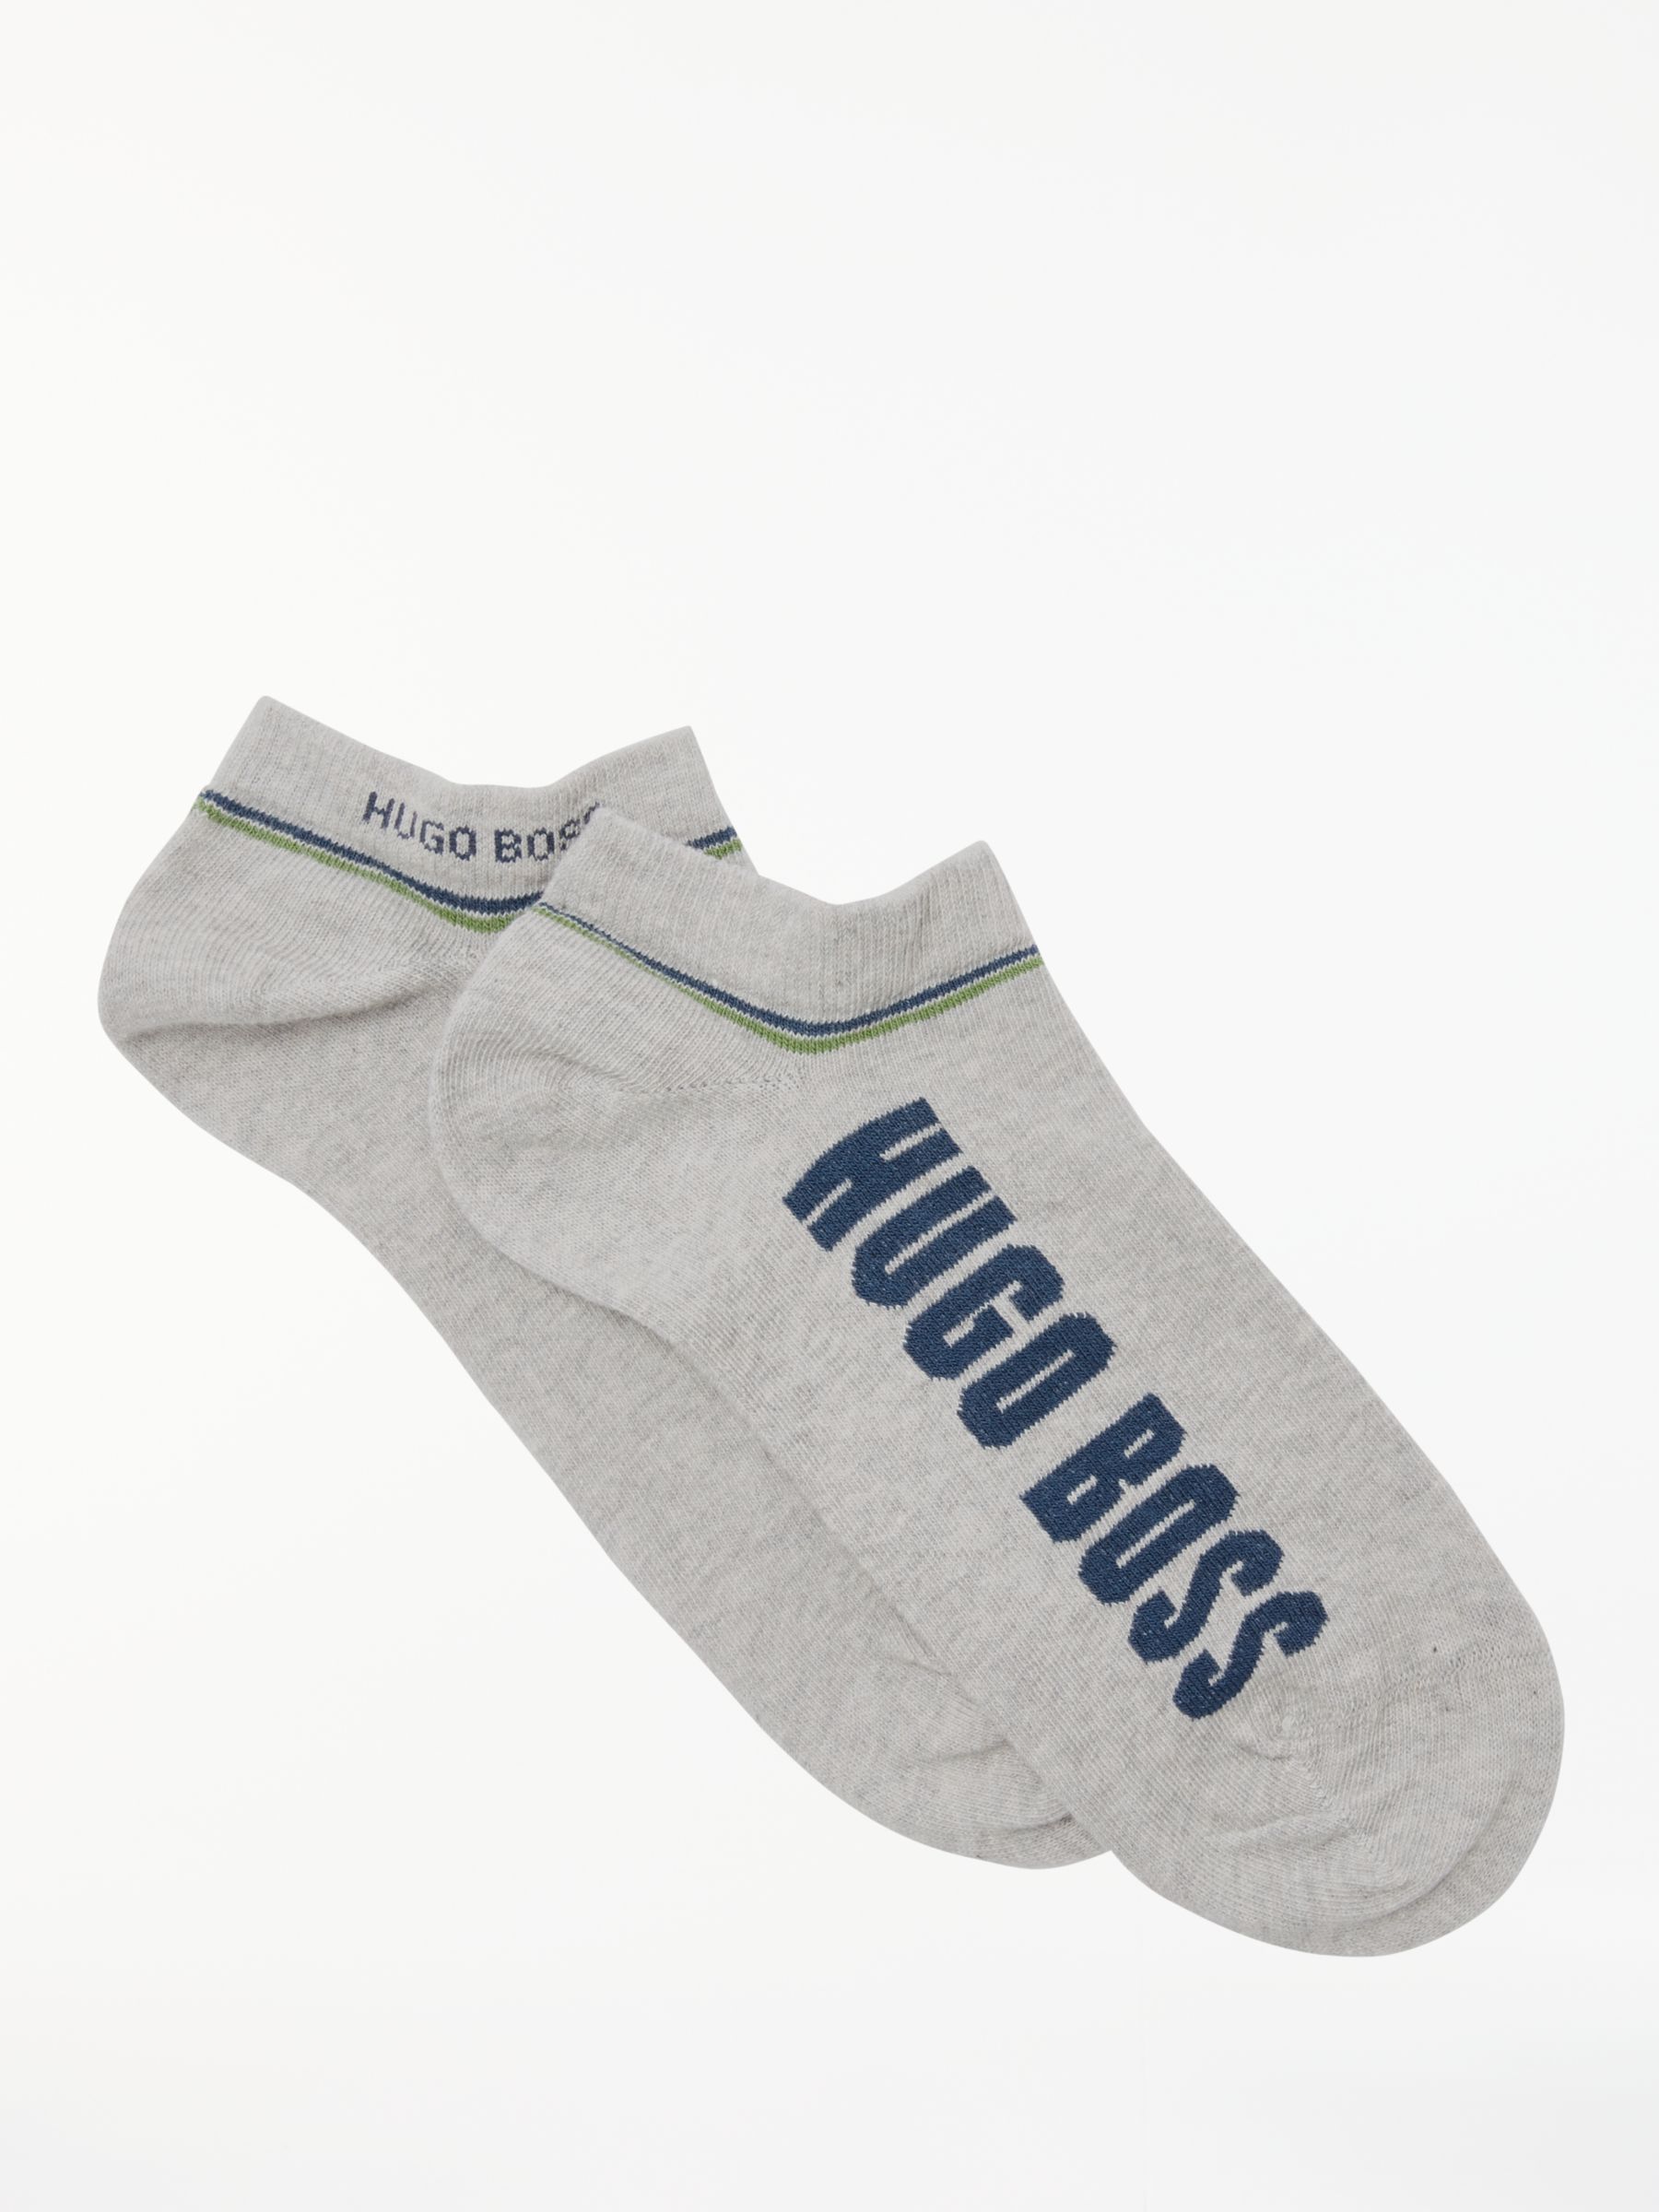 hugo boss trainer socks